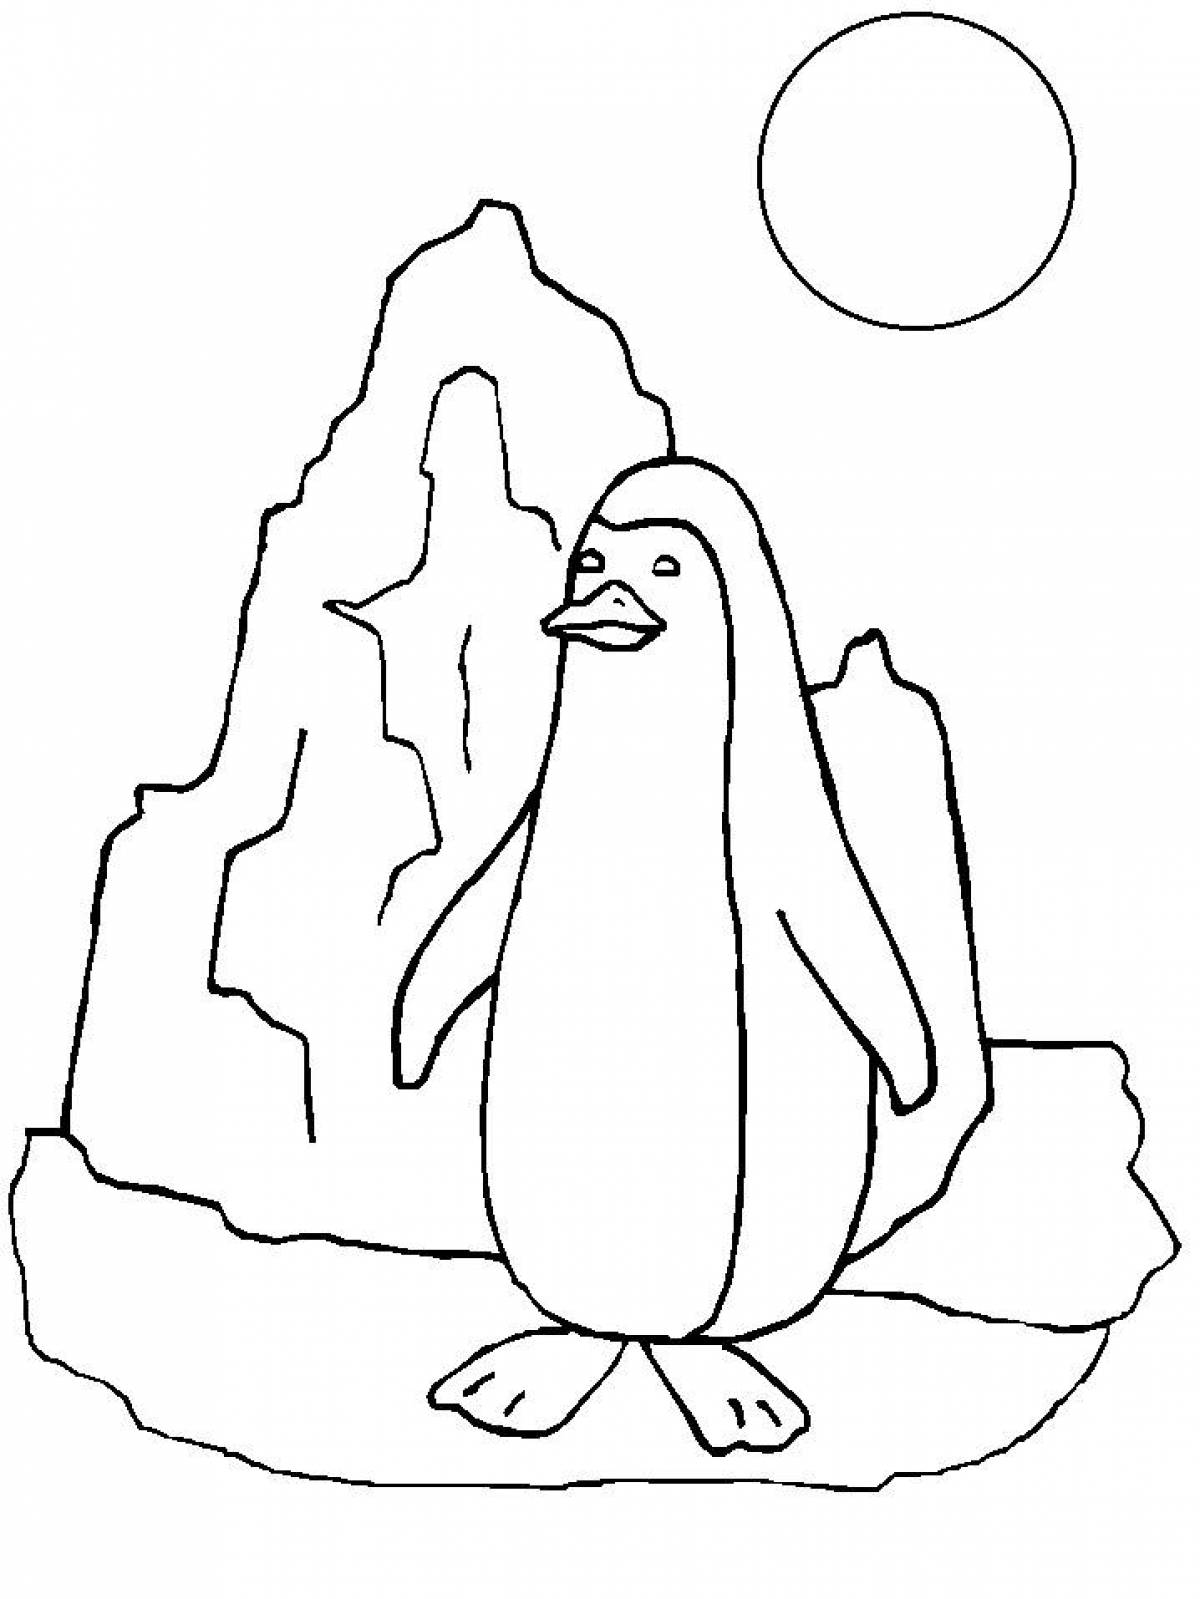 Забавная раскраска пингвинов для детей